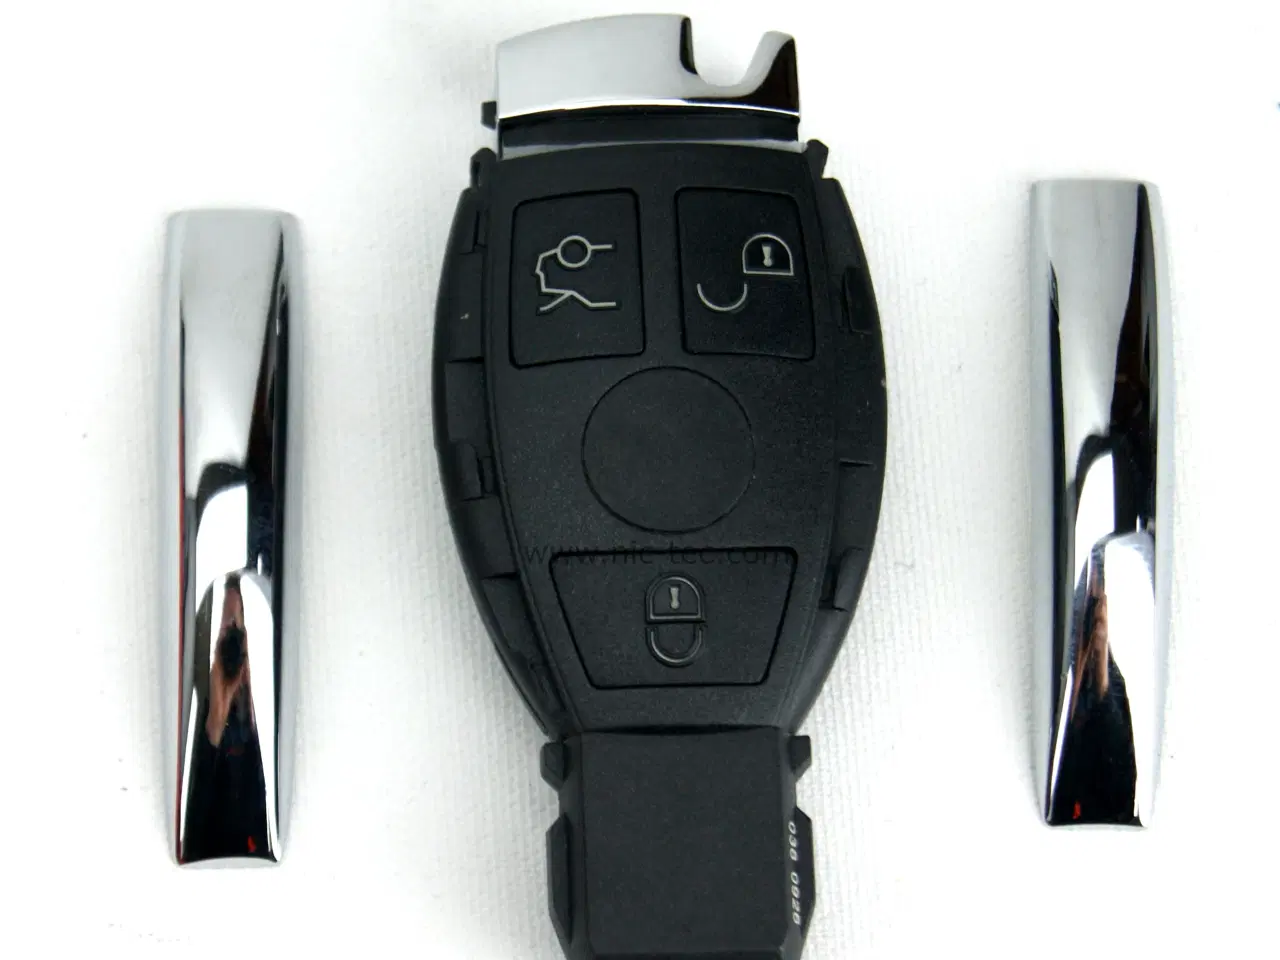 Billede 1 - Bilnøgle reparations kit til Mercedes 3 knaps nøgle hvor printet kan trække ud af bagenden